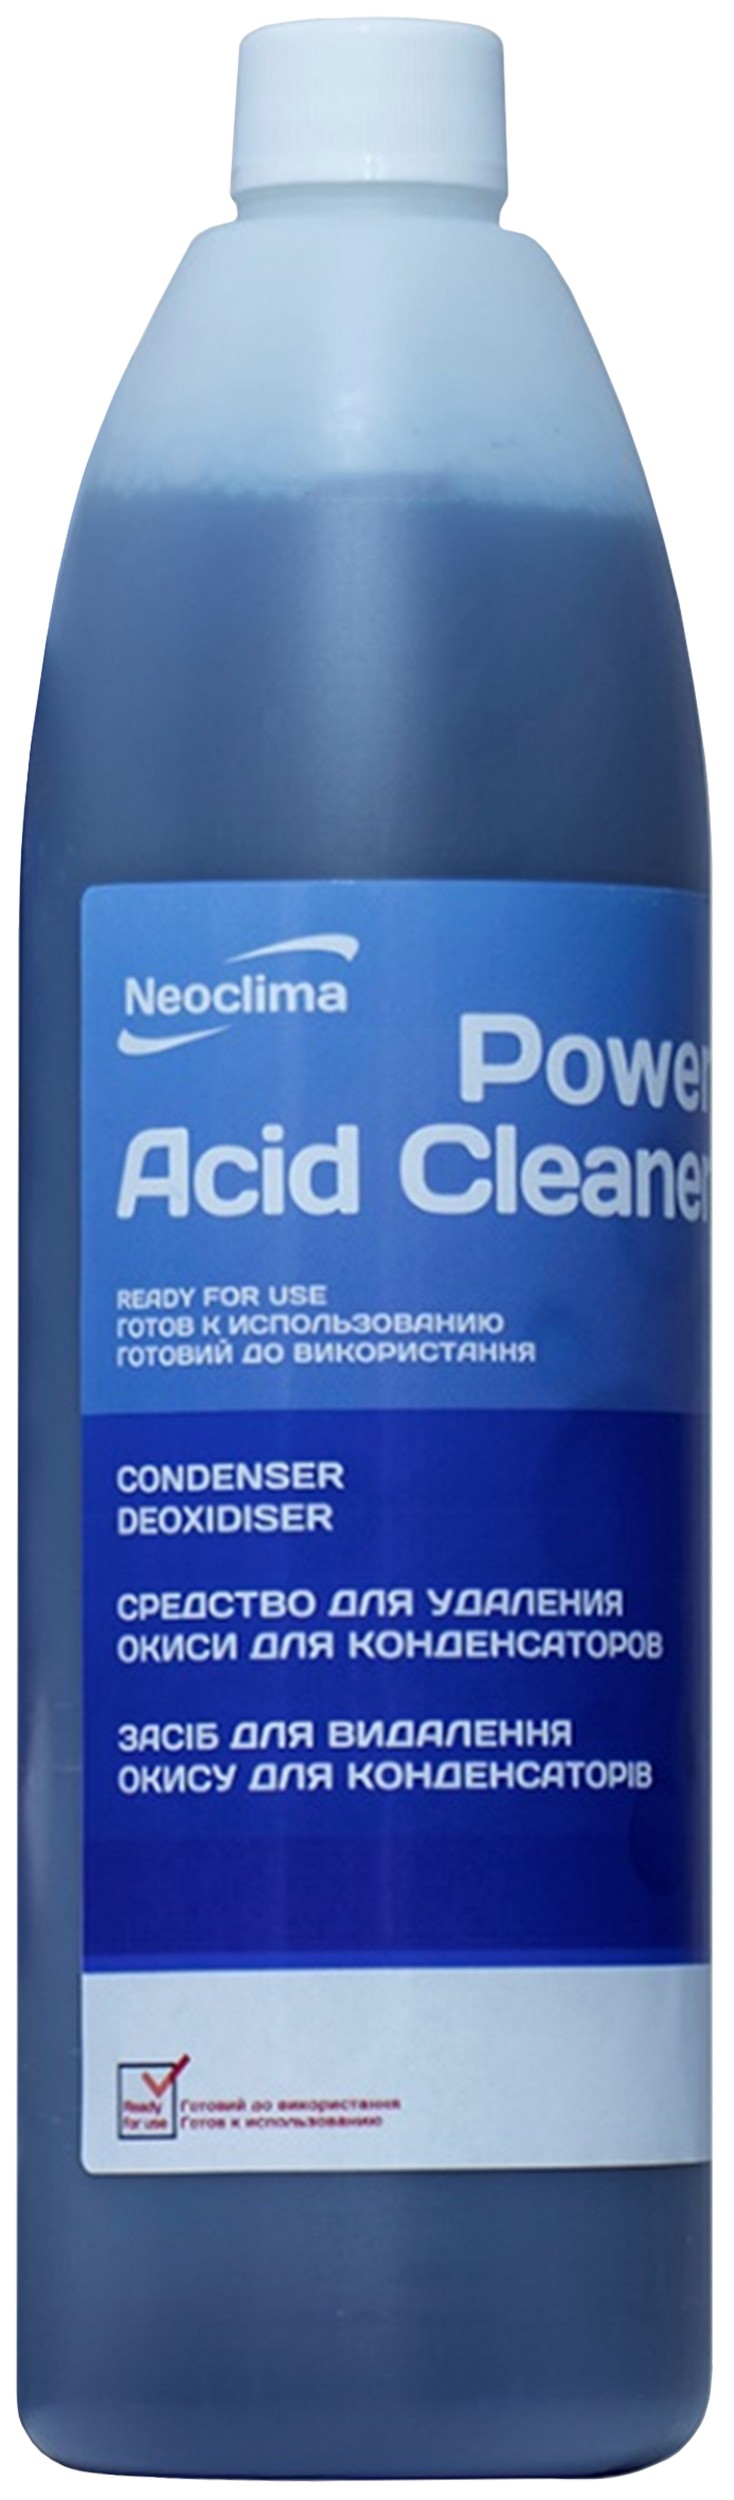 Цена очиститель внешнего блока Neoclima Power Acid Cleaner 1 л, спрей в Львове